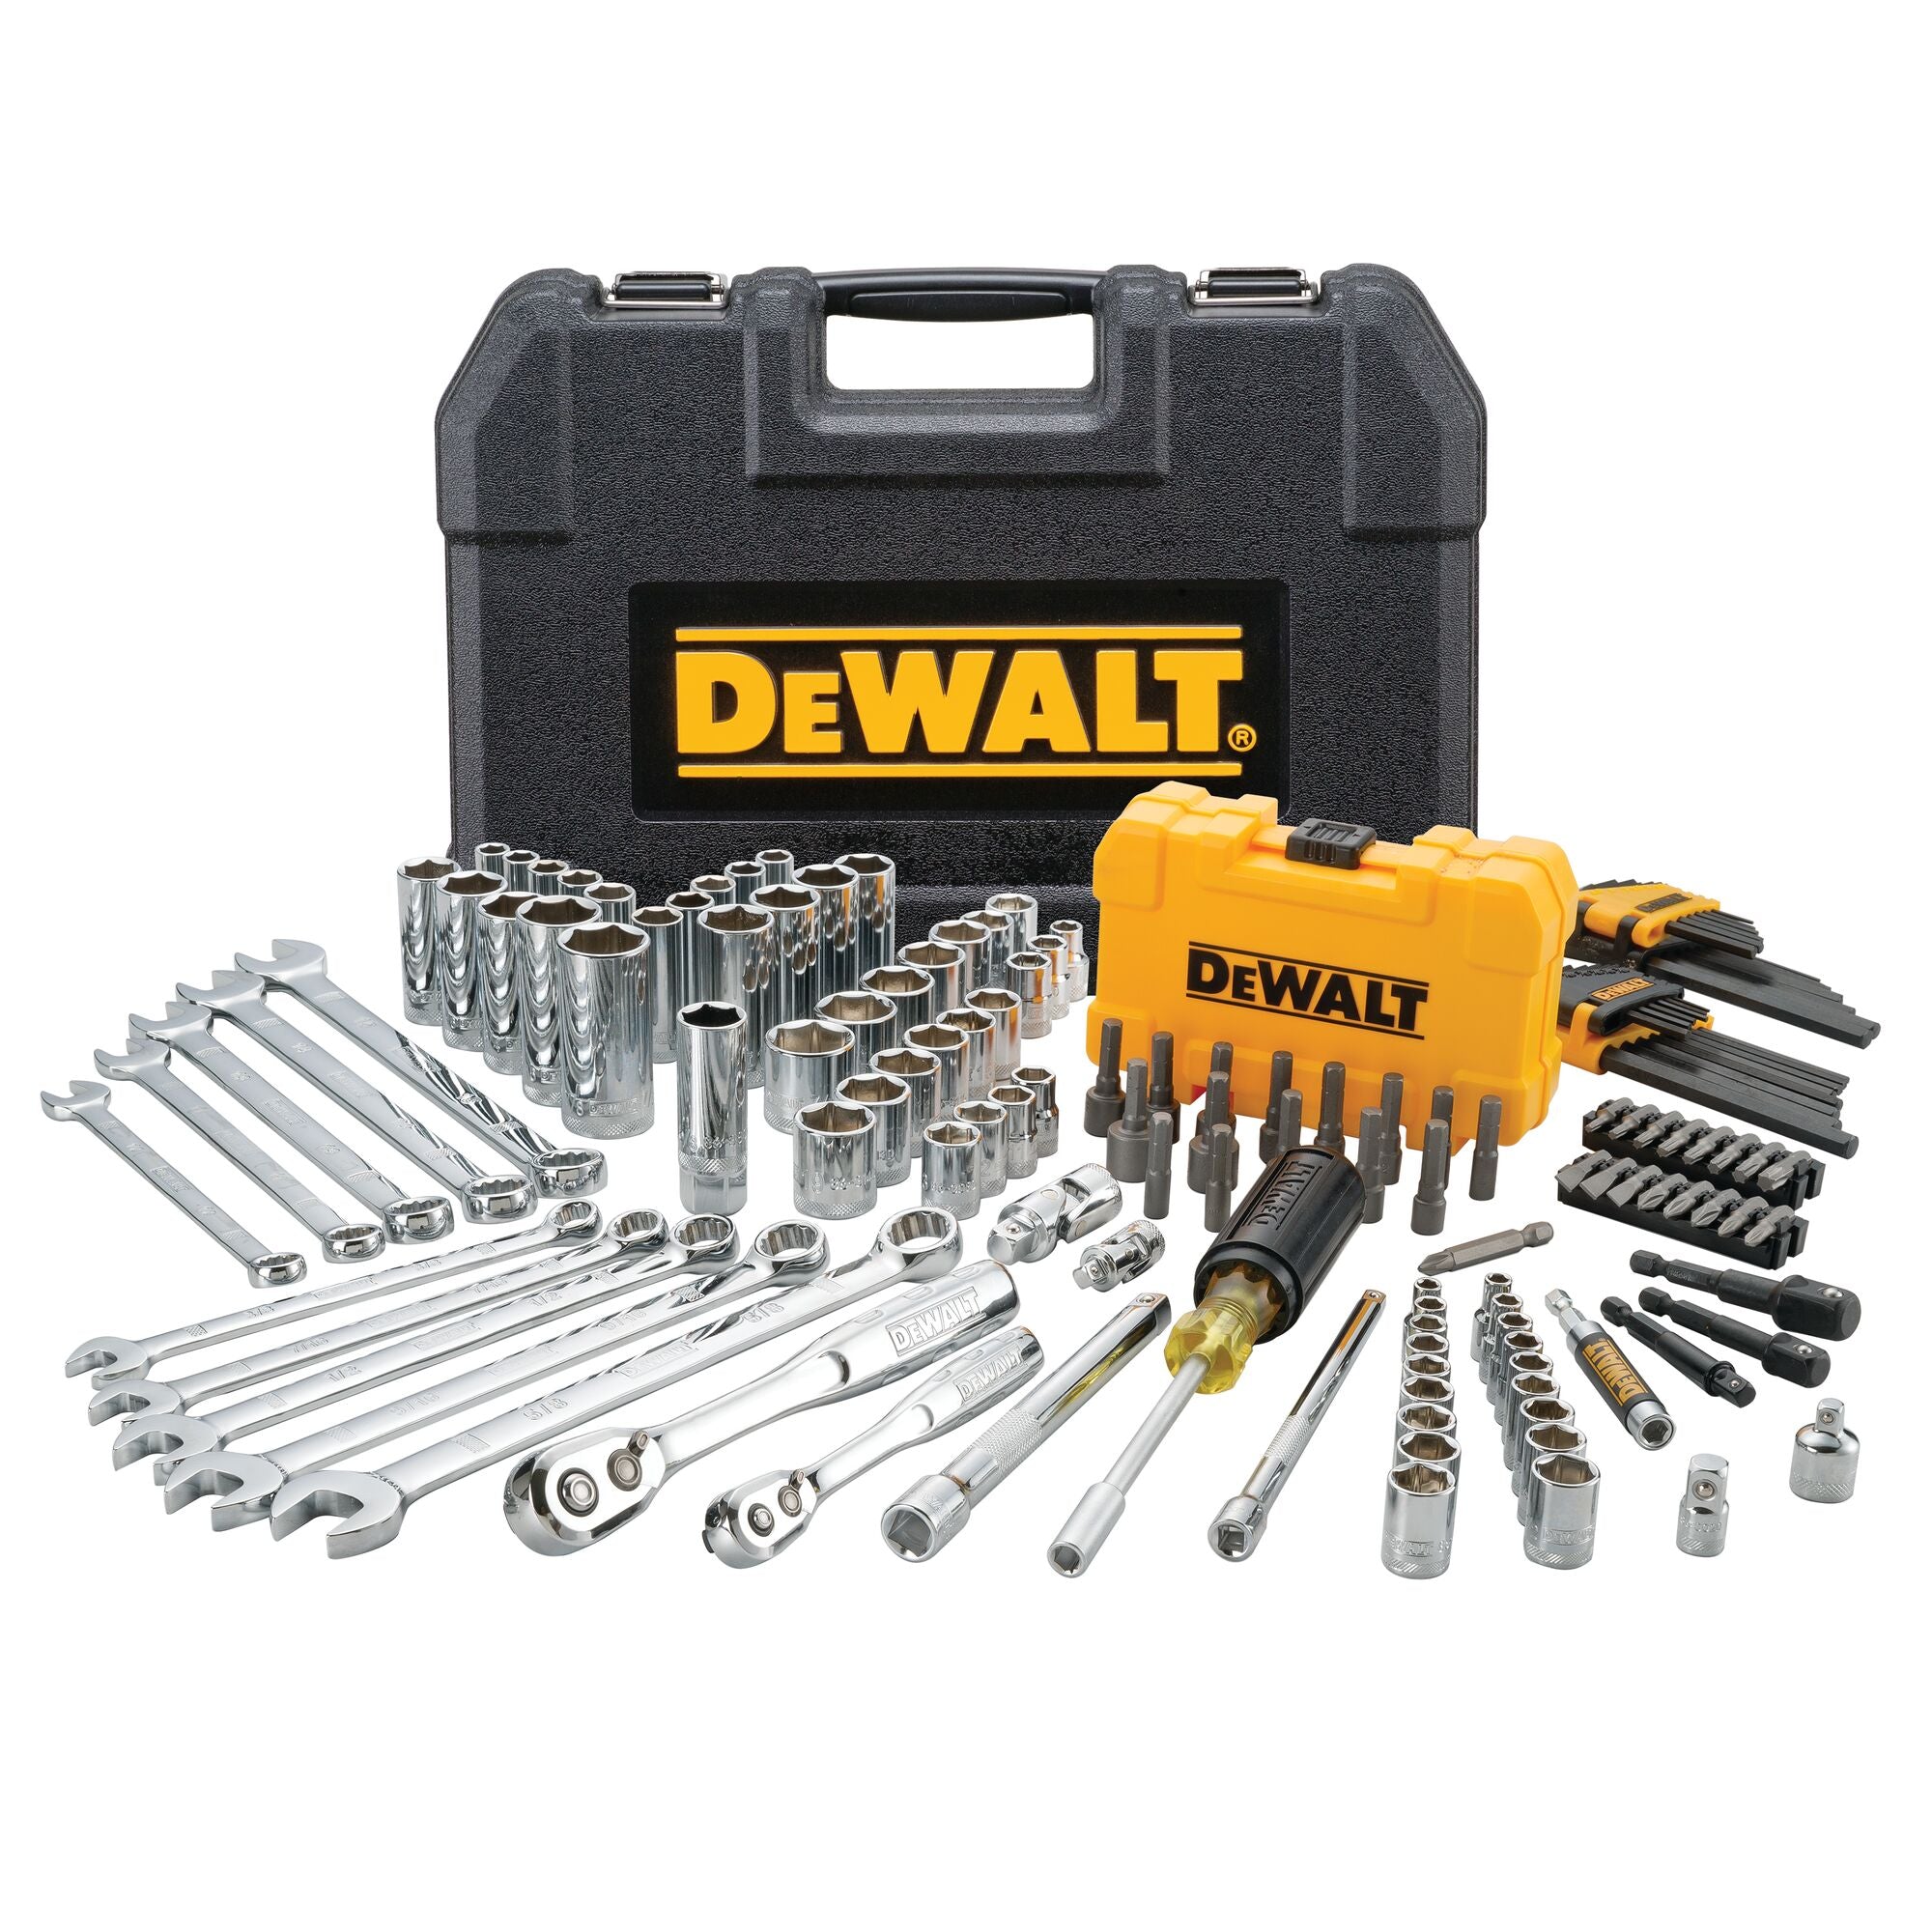 DeWALT 142 pc. 1/4" & 3/8" Drive Mechanics Tool Set